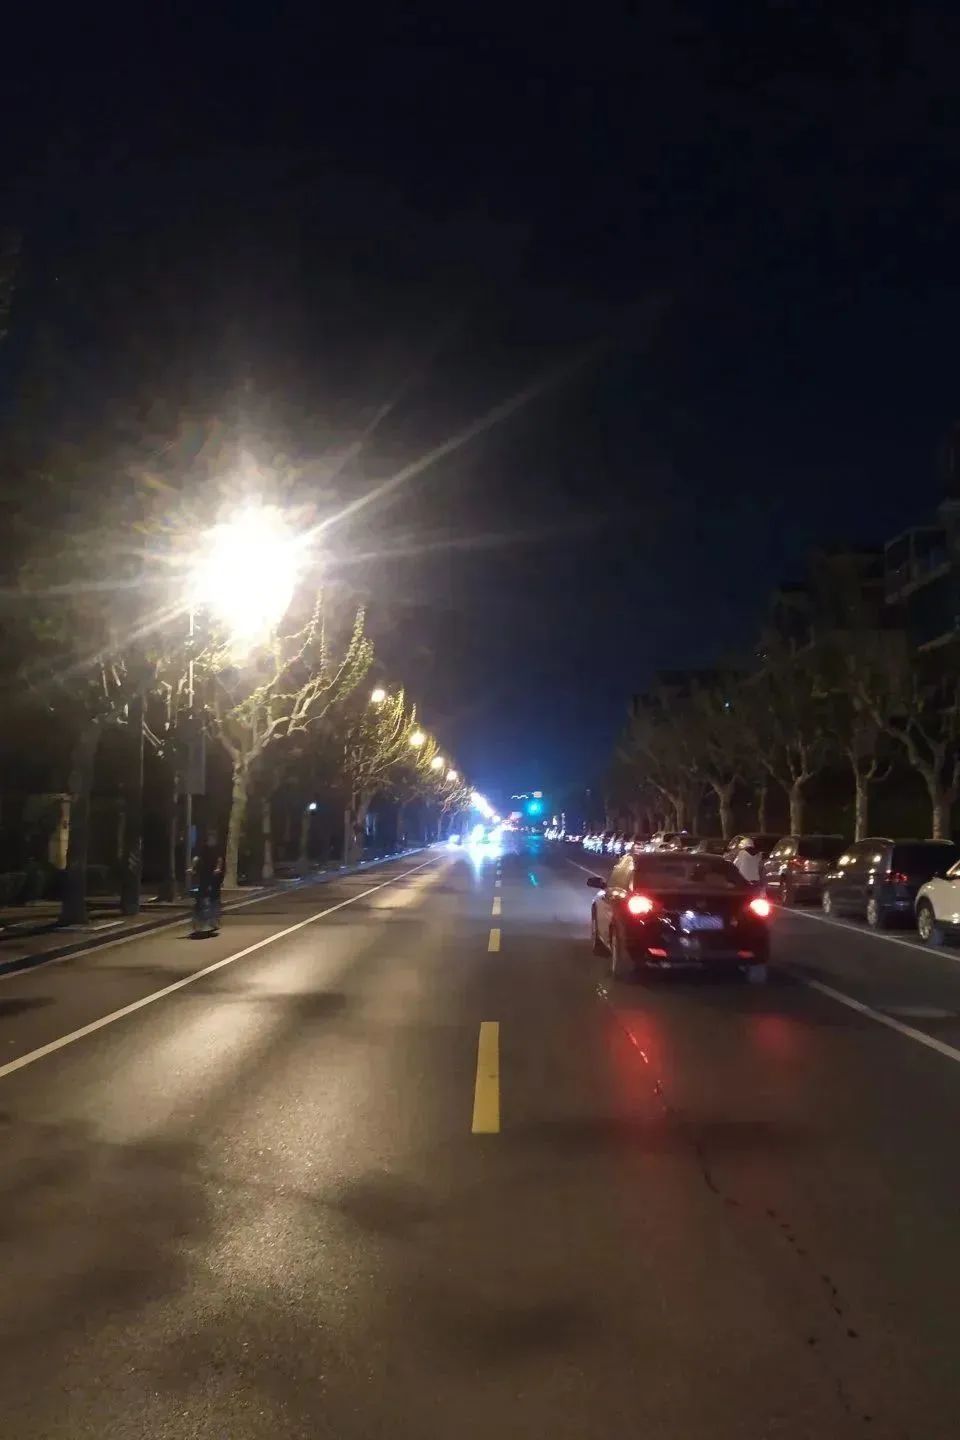 上海嘉定区区管道路照明设施节能改造工程正式启动